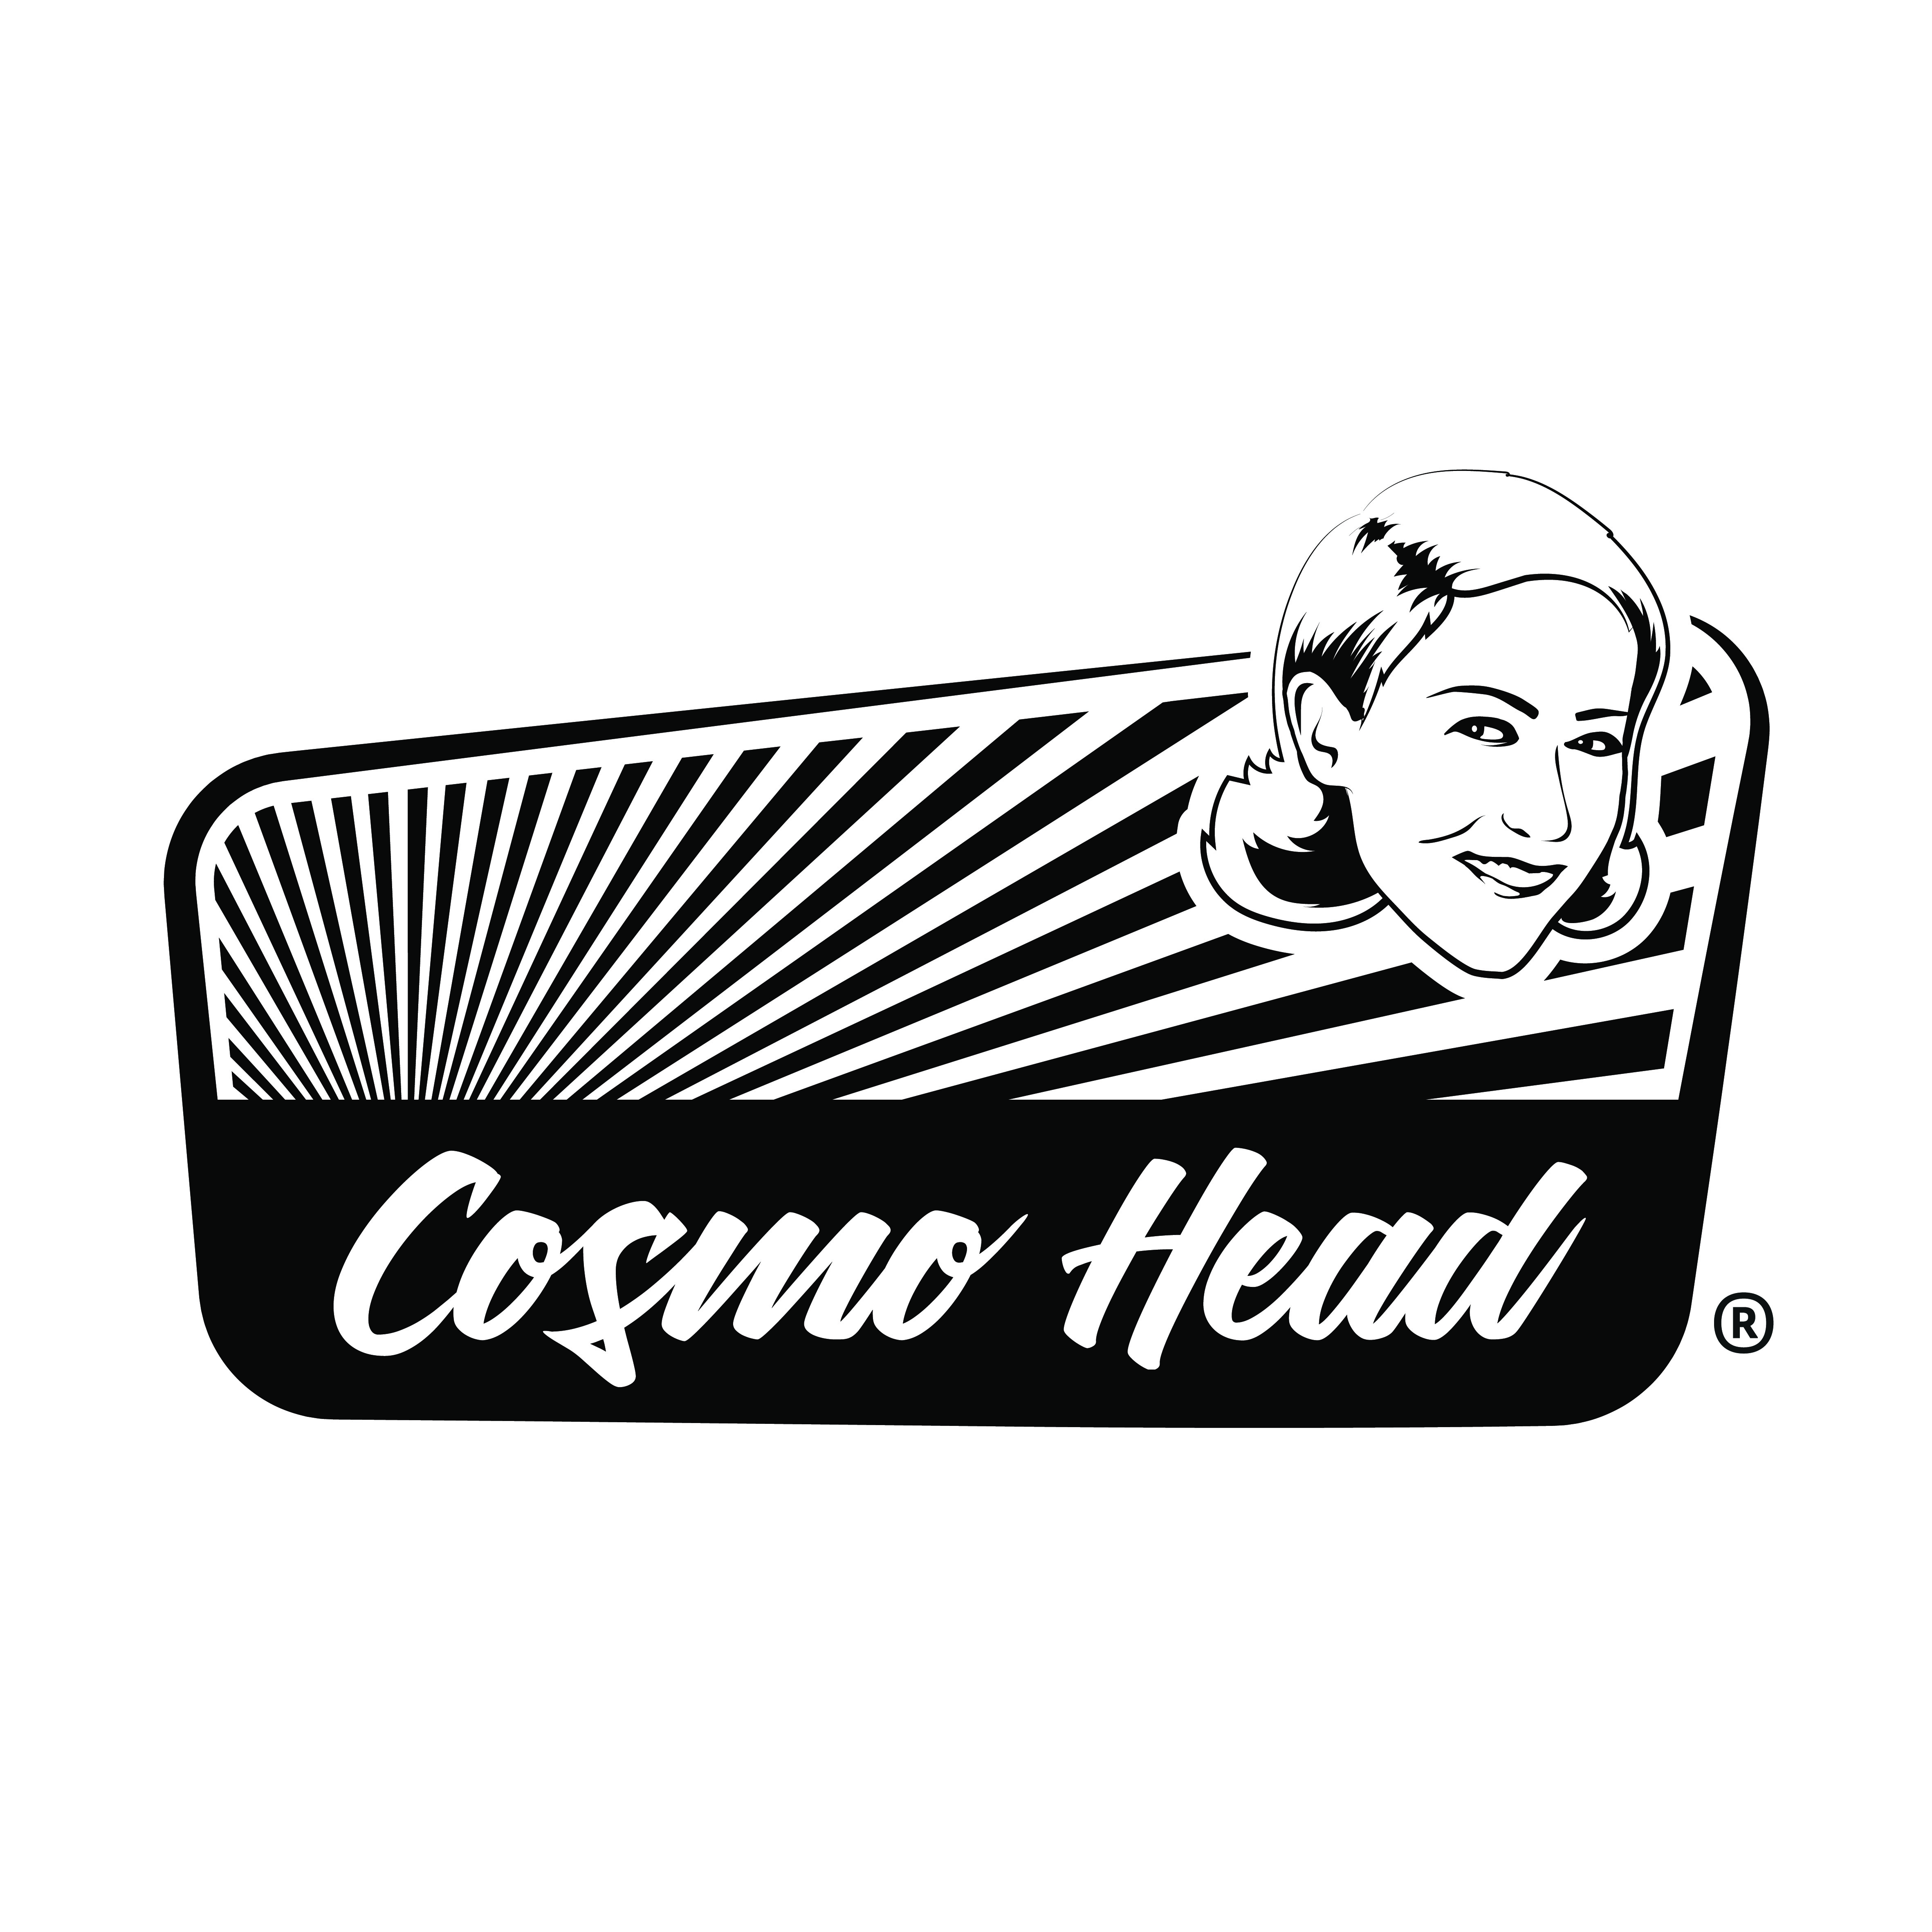 Cosmo Head